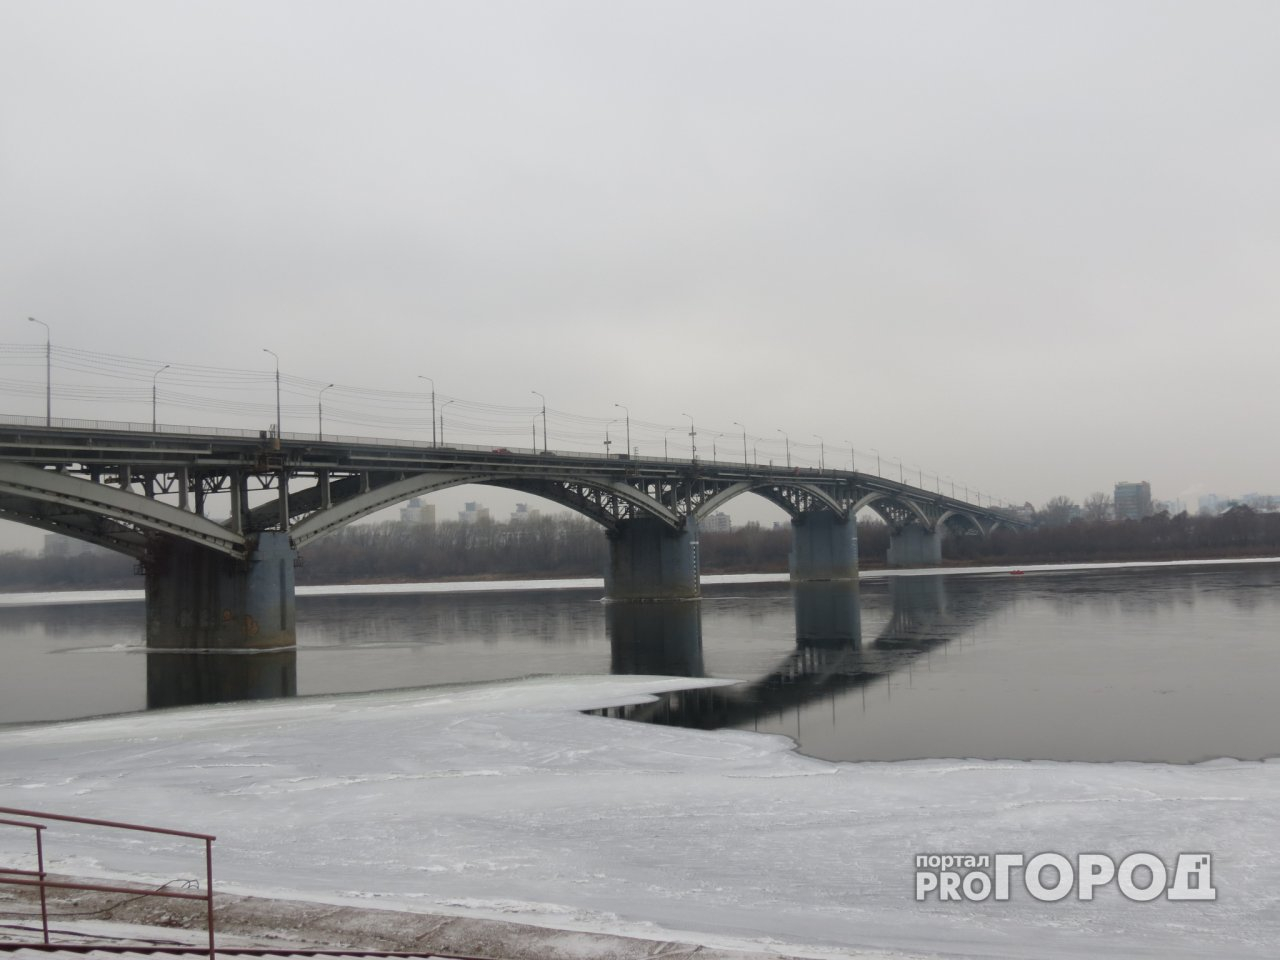 Мызинский мост встанет на ремонт на два года